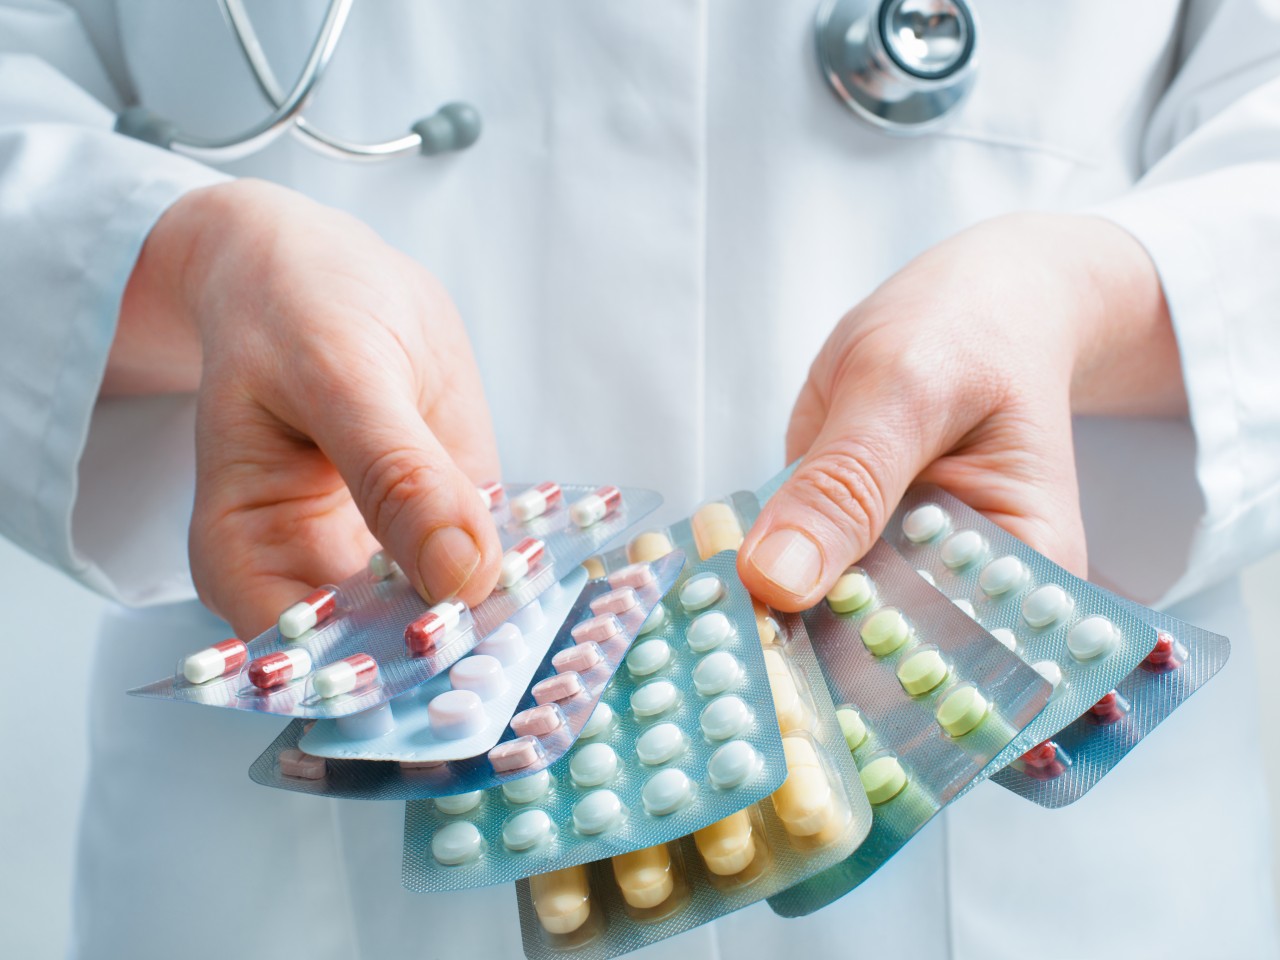 Аптека онлайн: широкий выбор лекарств для заказа с удобством и безопасностью